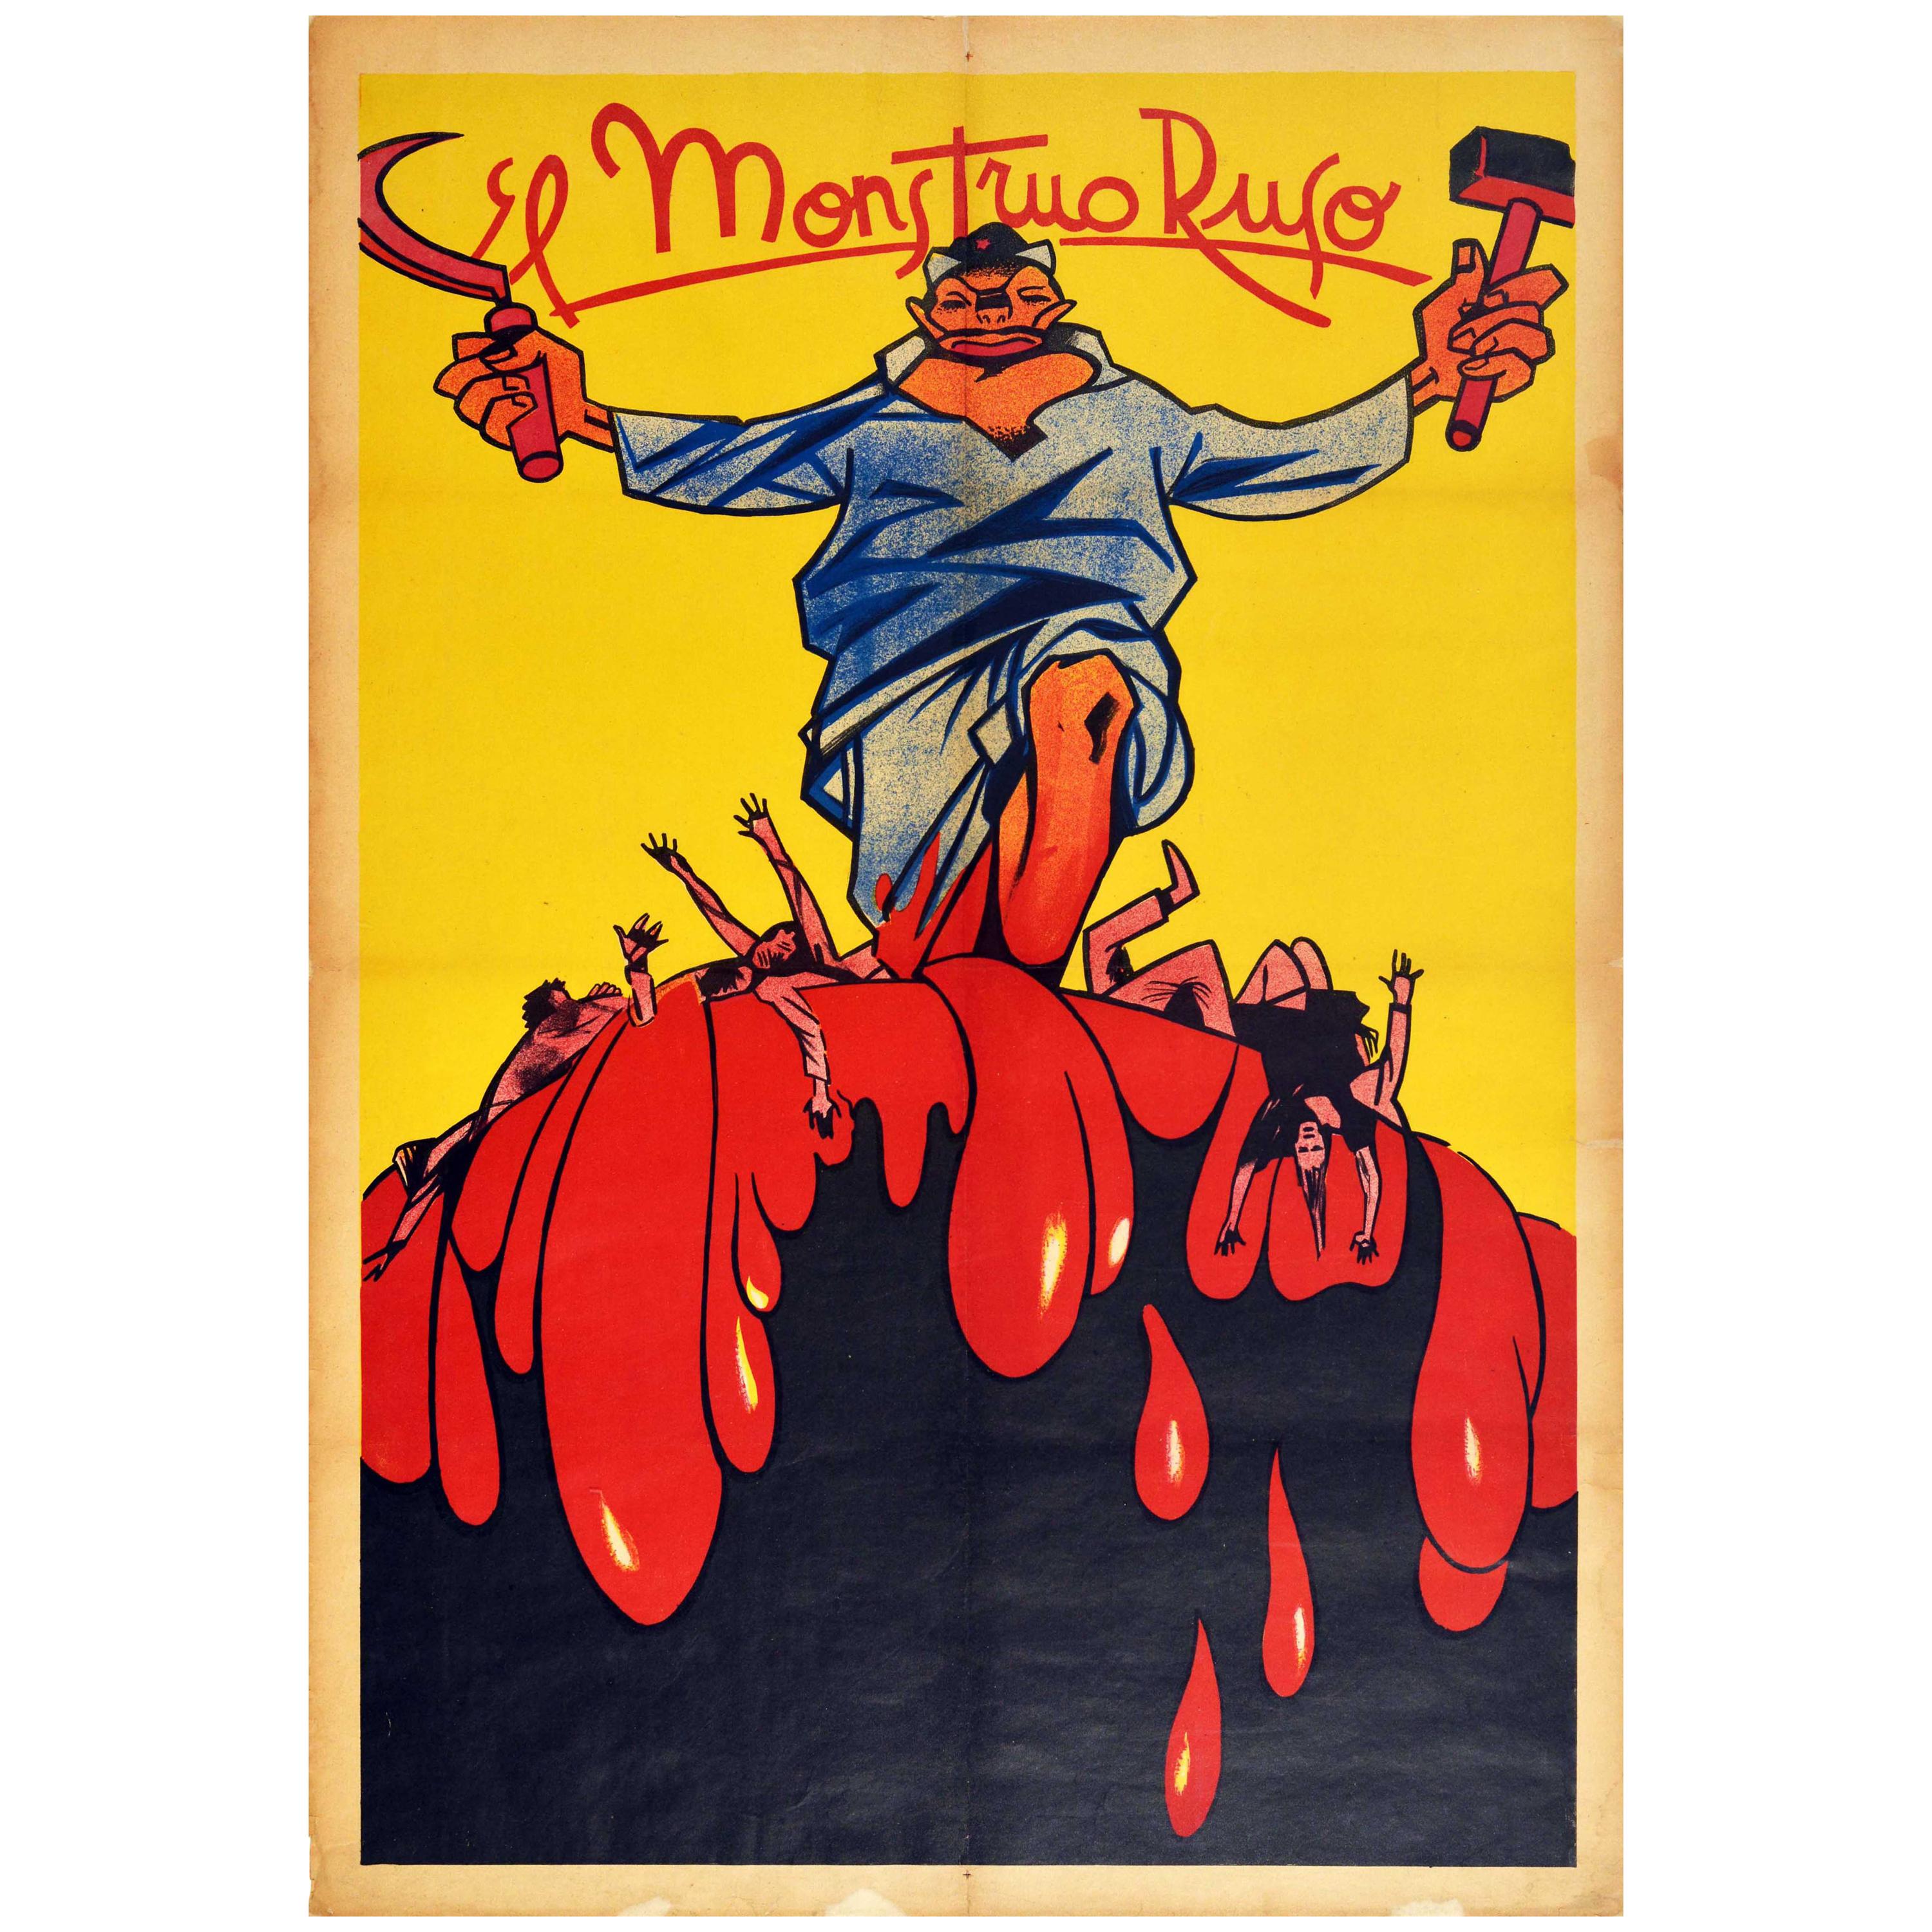 Affiche d'origine de la guerre civile espagnole El Monstruo Ruso le Monstre russe